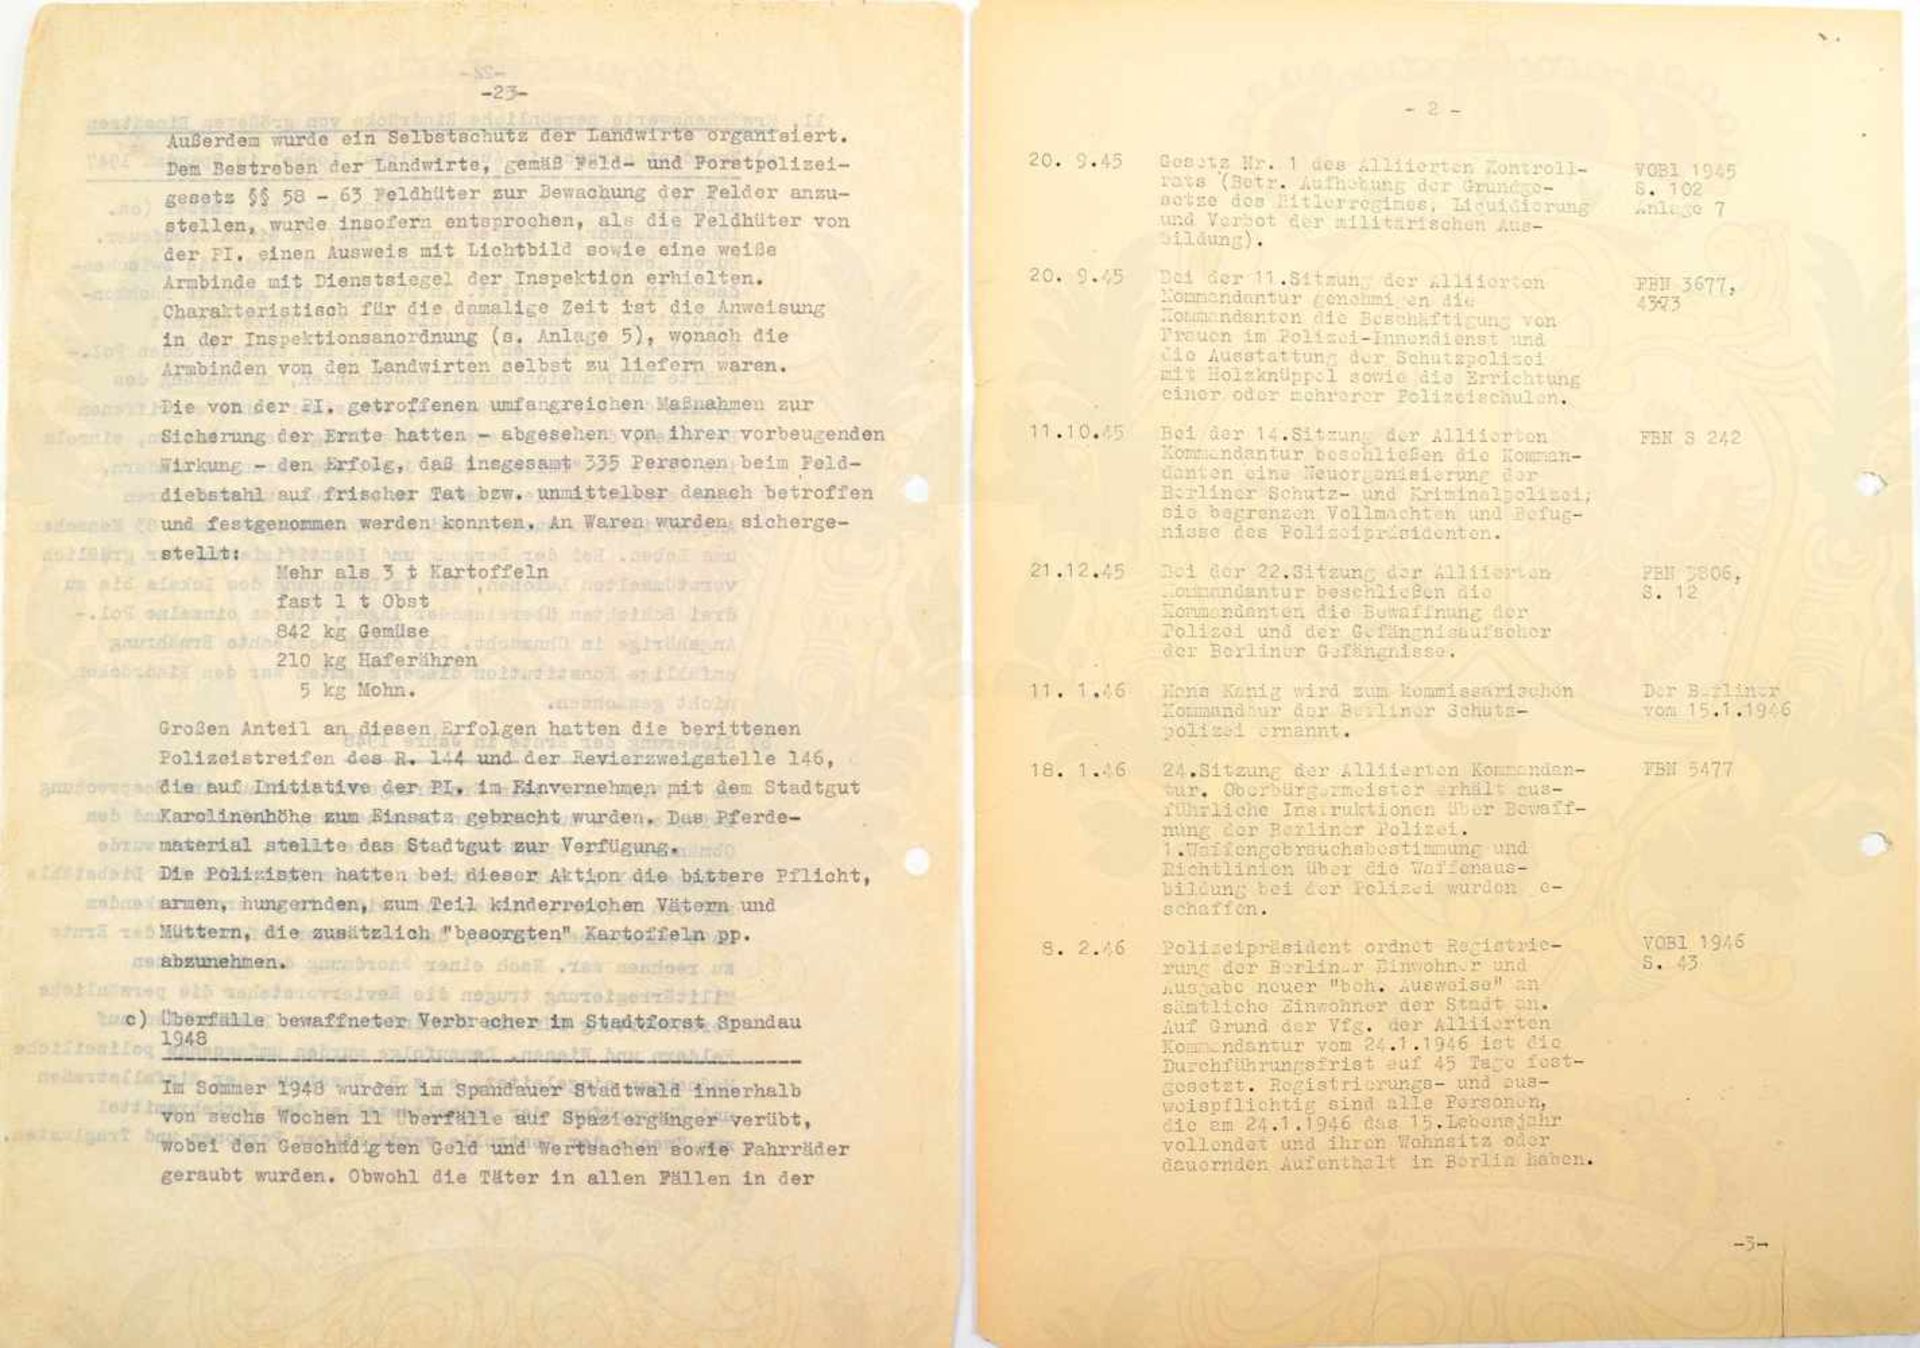 GESCHICHTE DER POLIZEI BERLINS, 120 Typoskript-Seiten, 1957-1959 u. um 1975, davon 55 S. zu - Bild 2 aus 2